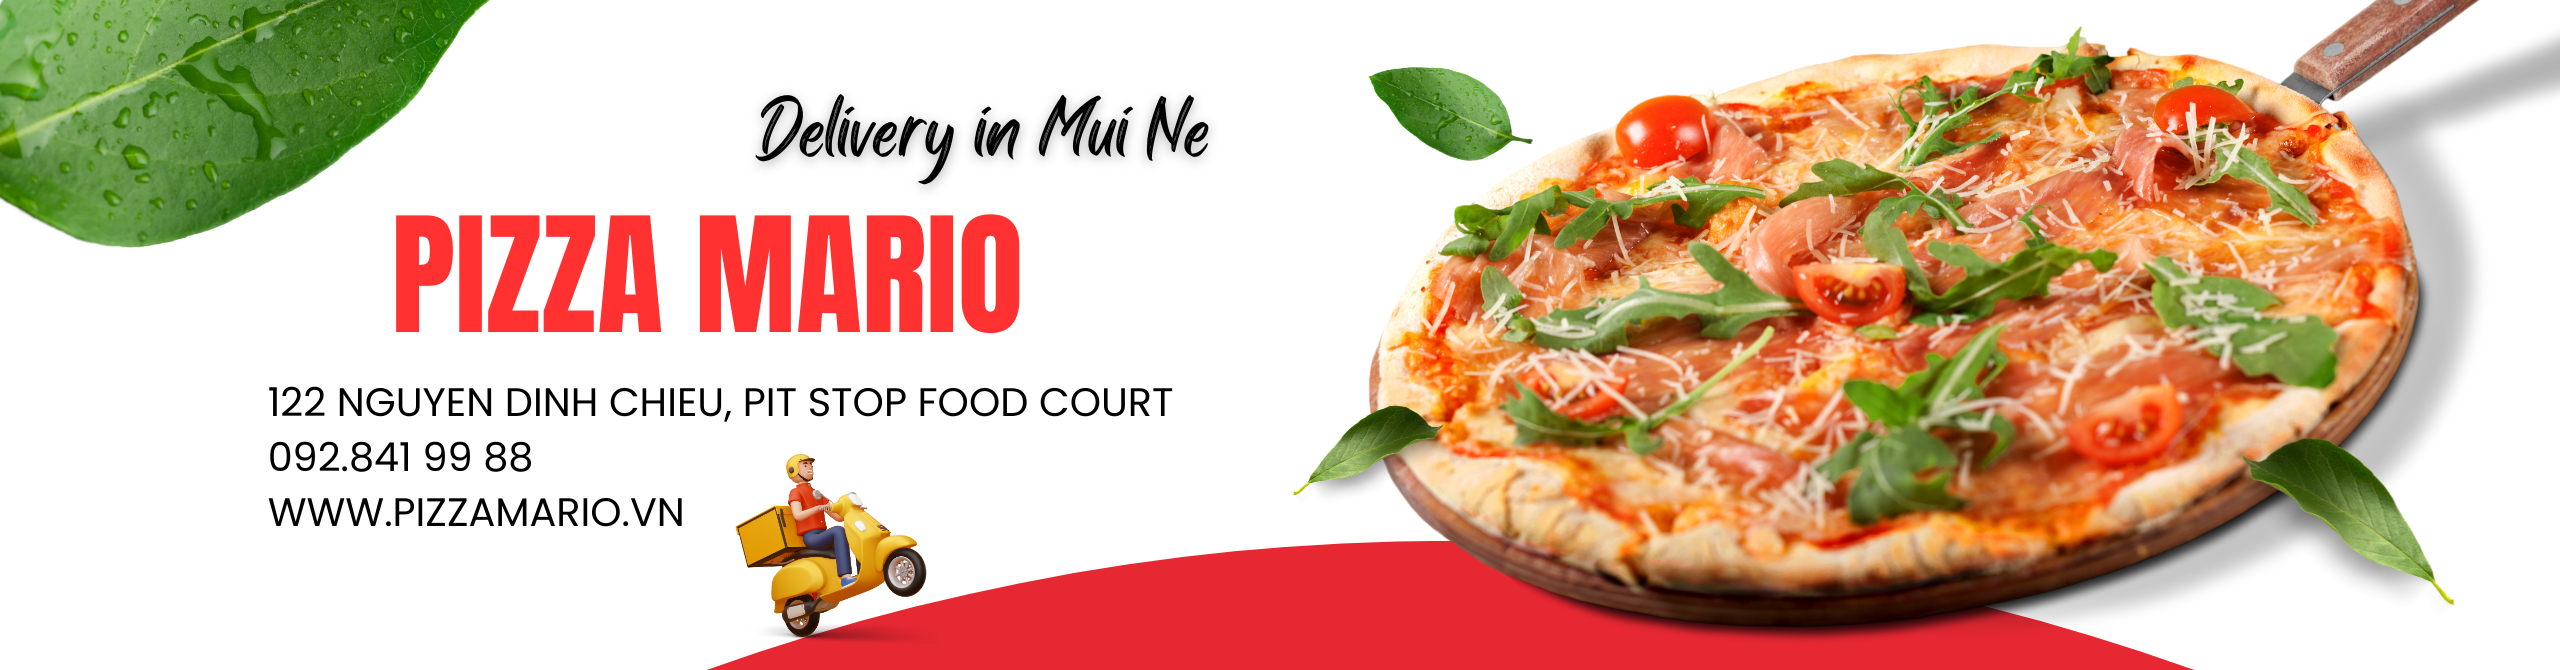 Pizza Mario - pizza delivery in Mui Ne - 0866.000.933